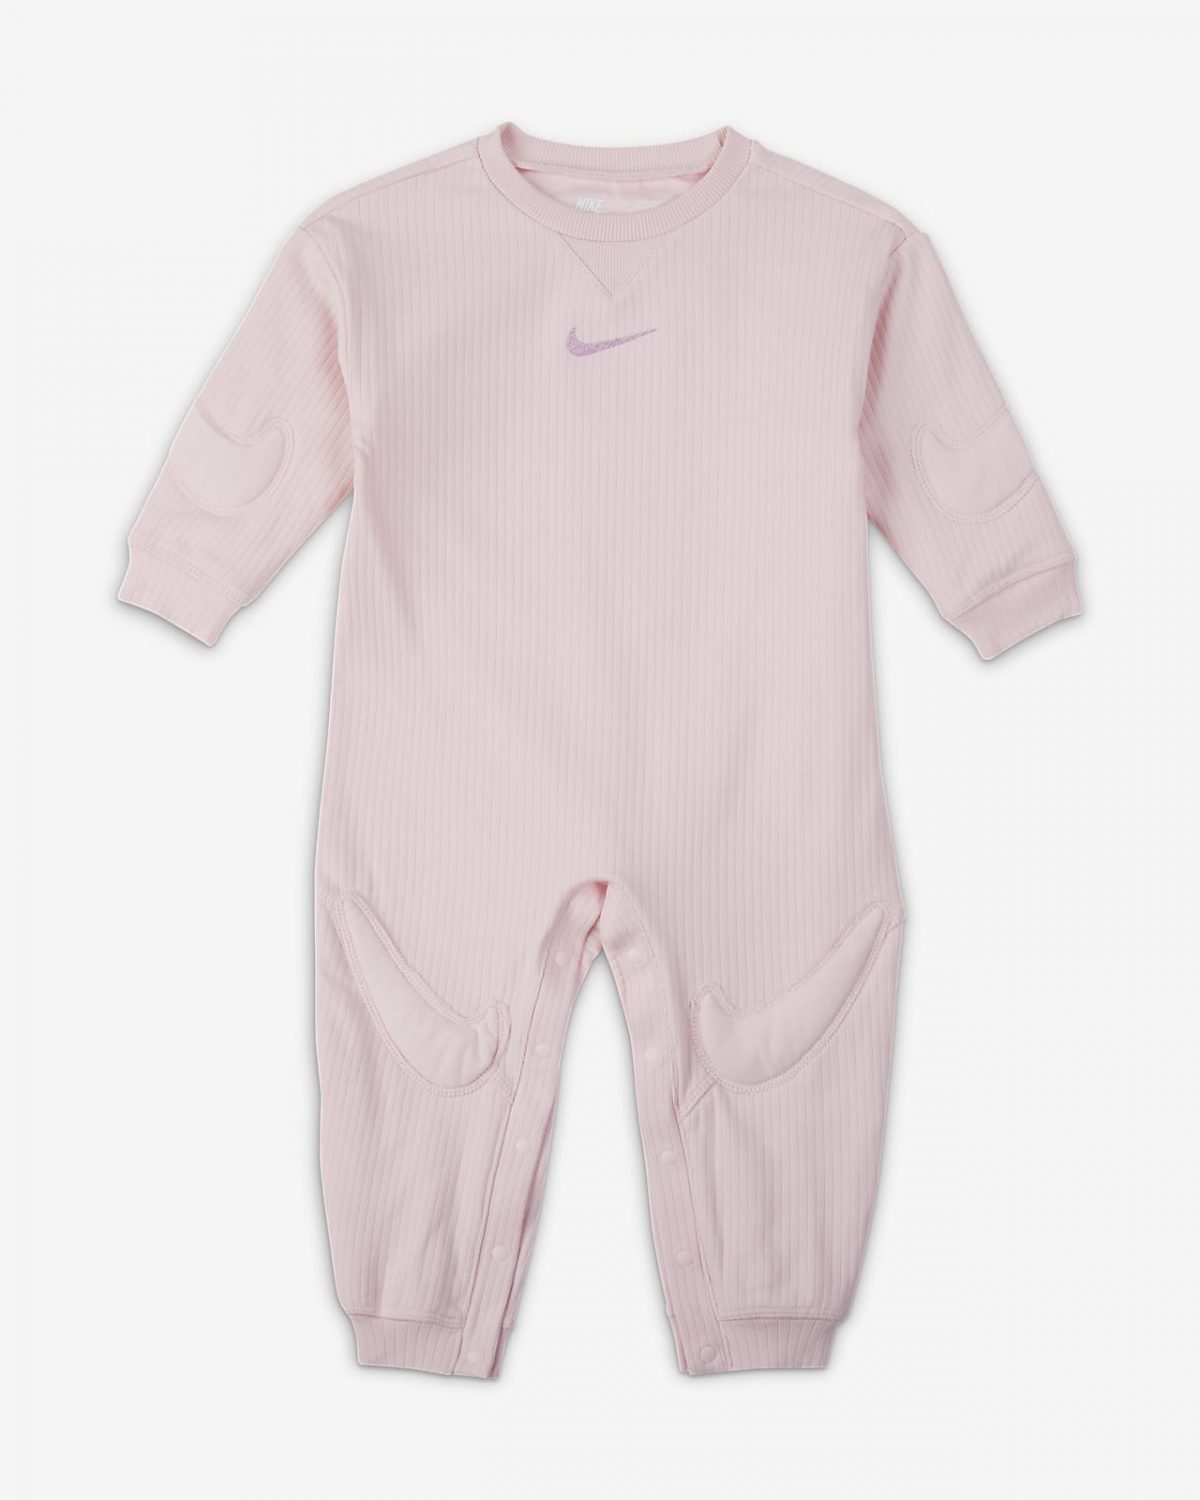 Детский костюм Nike "Ready Set" фото